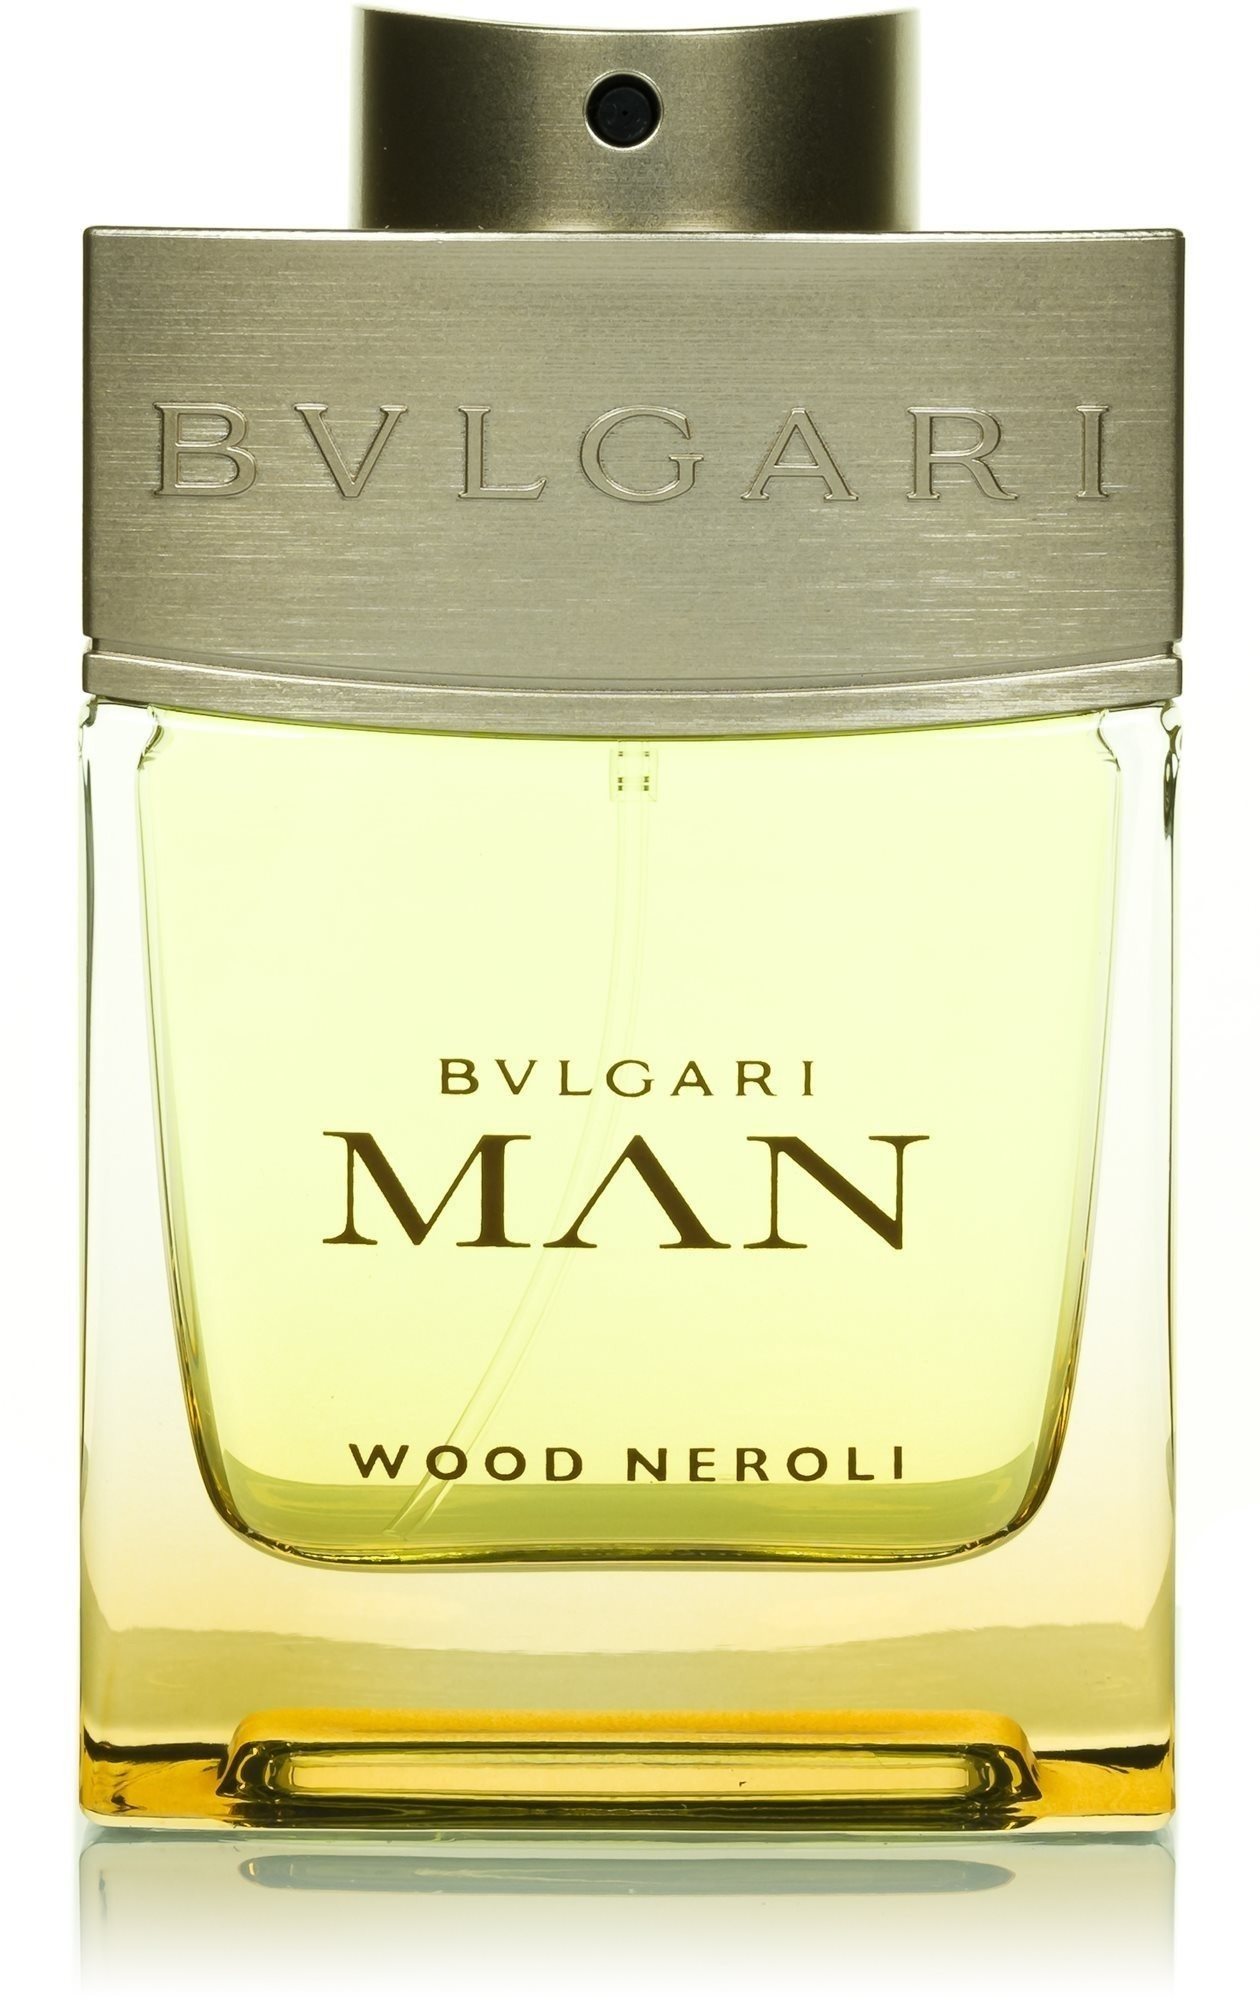 BVLGARI Bvlgari Man Wood Neroli EdP 100 ml